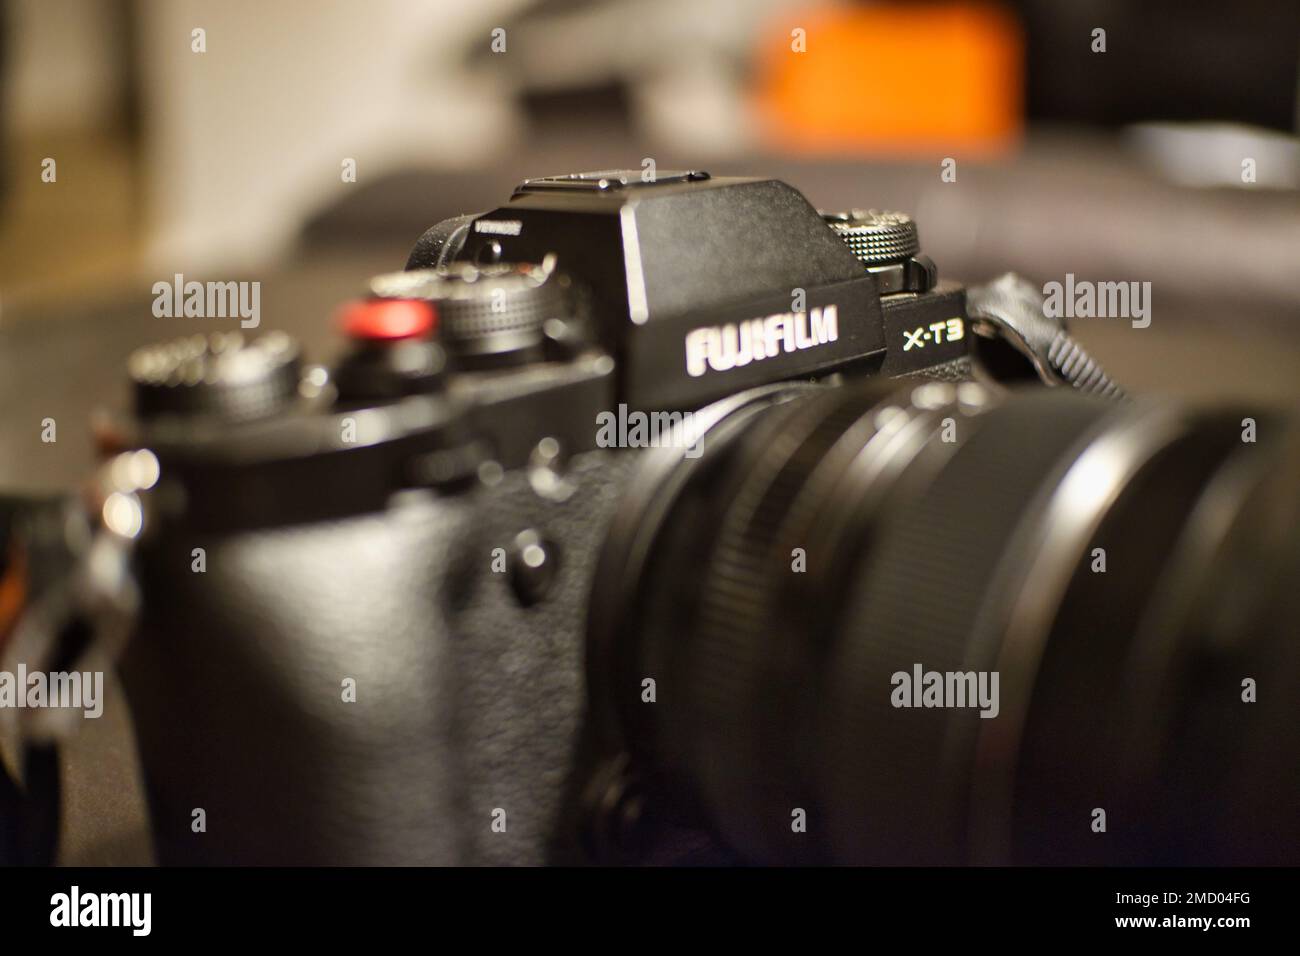 Gros plan sur un appareil photo numérique Fujifilm Banque D'Images